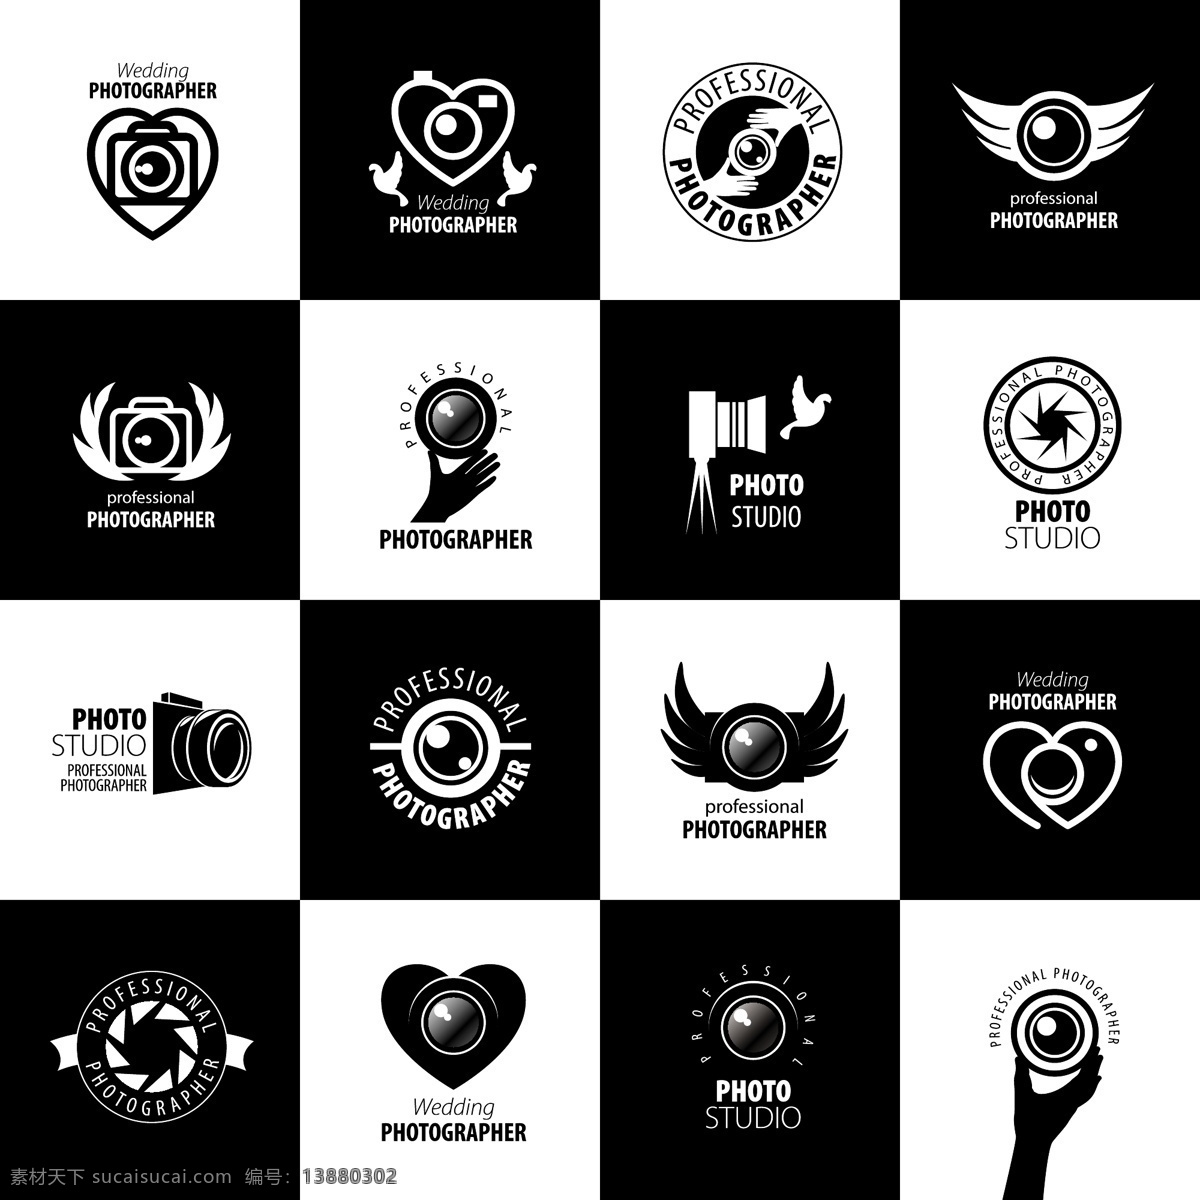 黑白 相机 logo 矢量 单反相机 数码照相机 拍照 摄影师 摄像标志 照相机标志 标志设计 商标设计 企业logo 公司logo 行业标志 标志图标 矢量素材